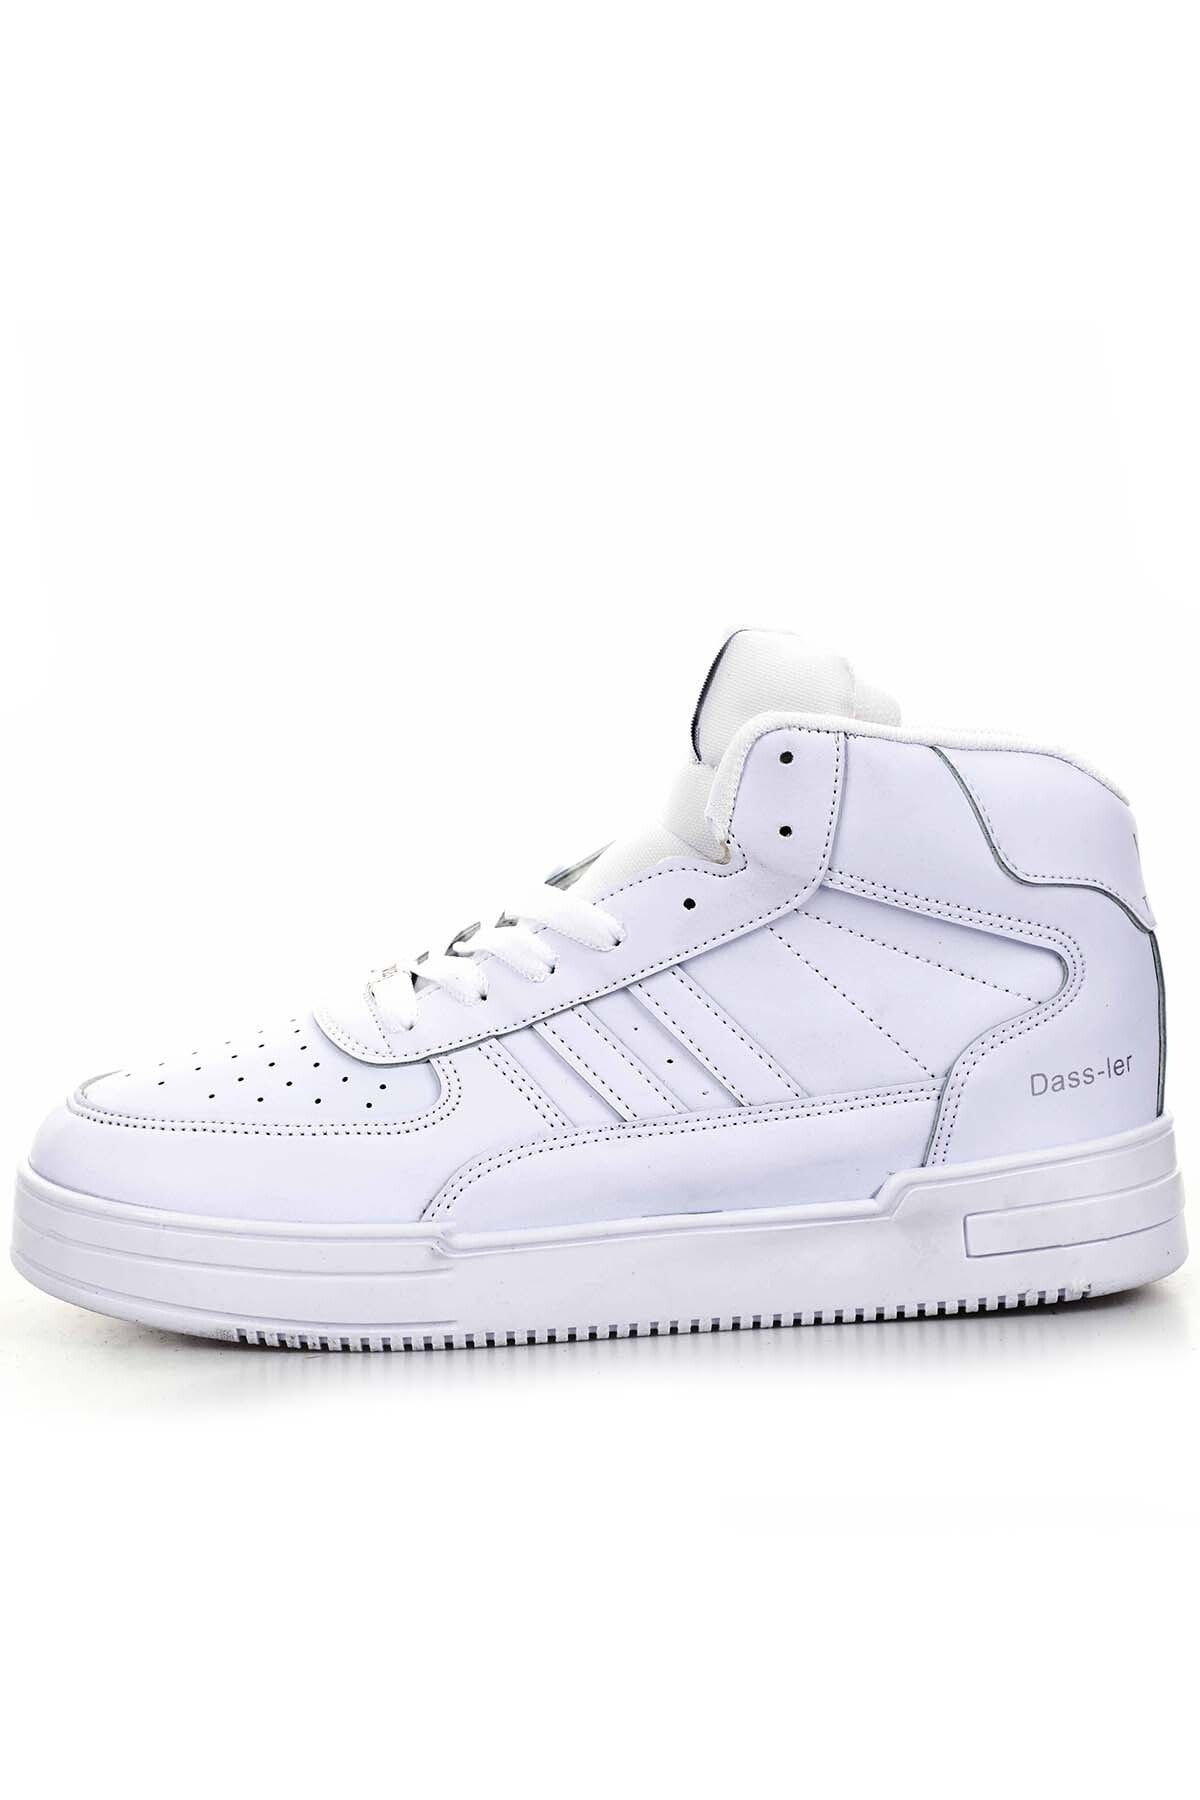 Freemax Unisex Garantili Ortopedik Sneaker Spor Bot Ayakkabı Beyaz Beyaz